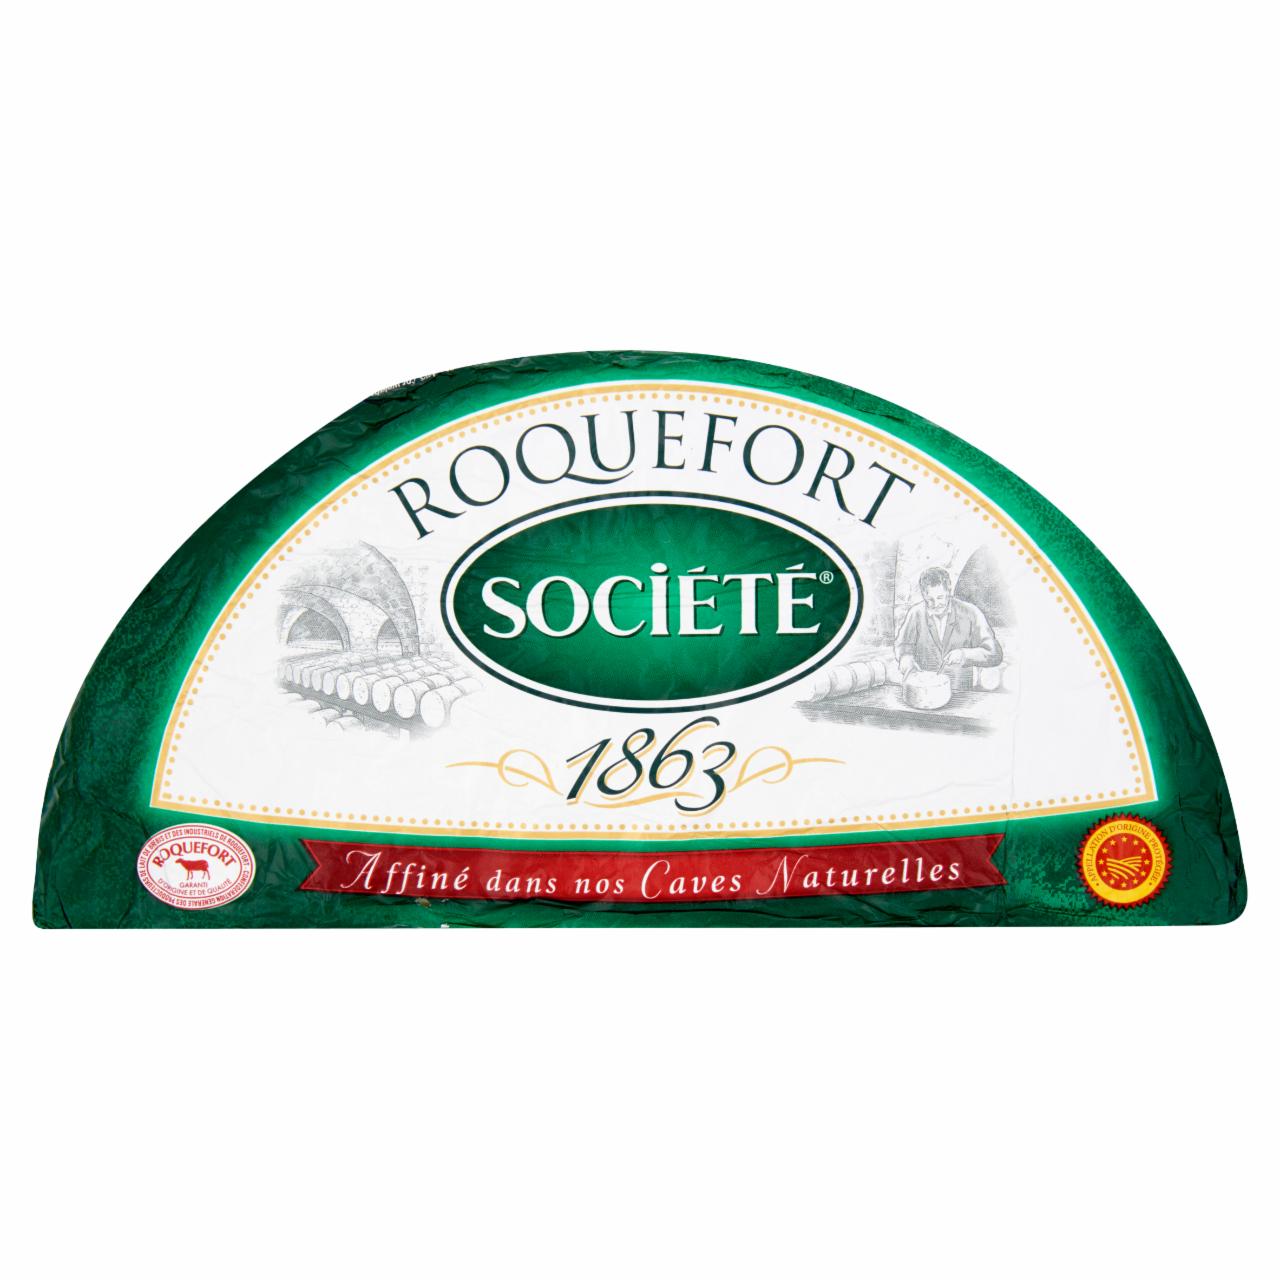 Képek - Société Roquefort nemespenésszel érlelt juhtejből készült zsíros félkemény sajt